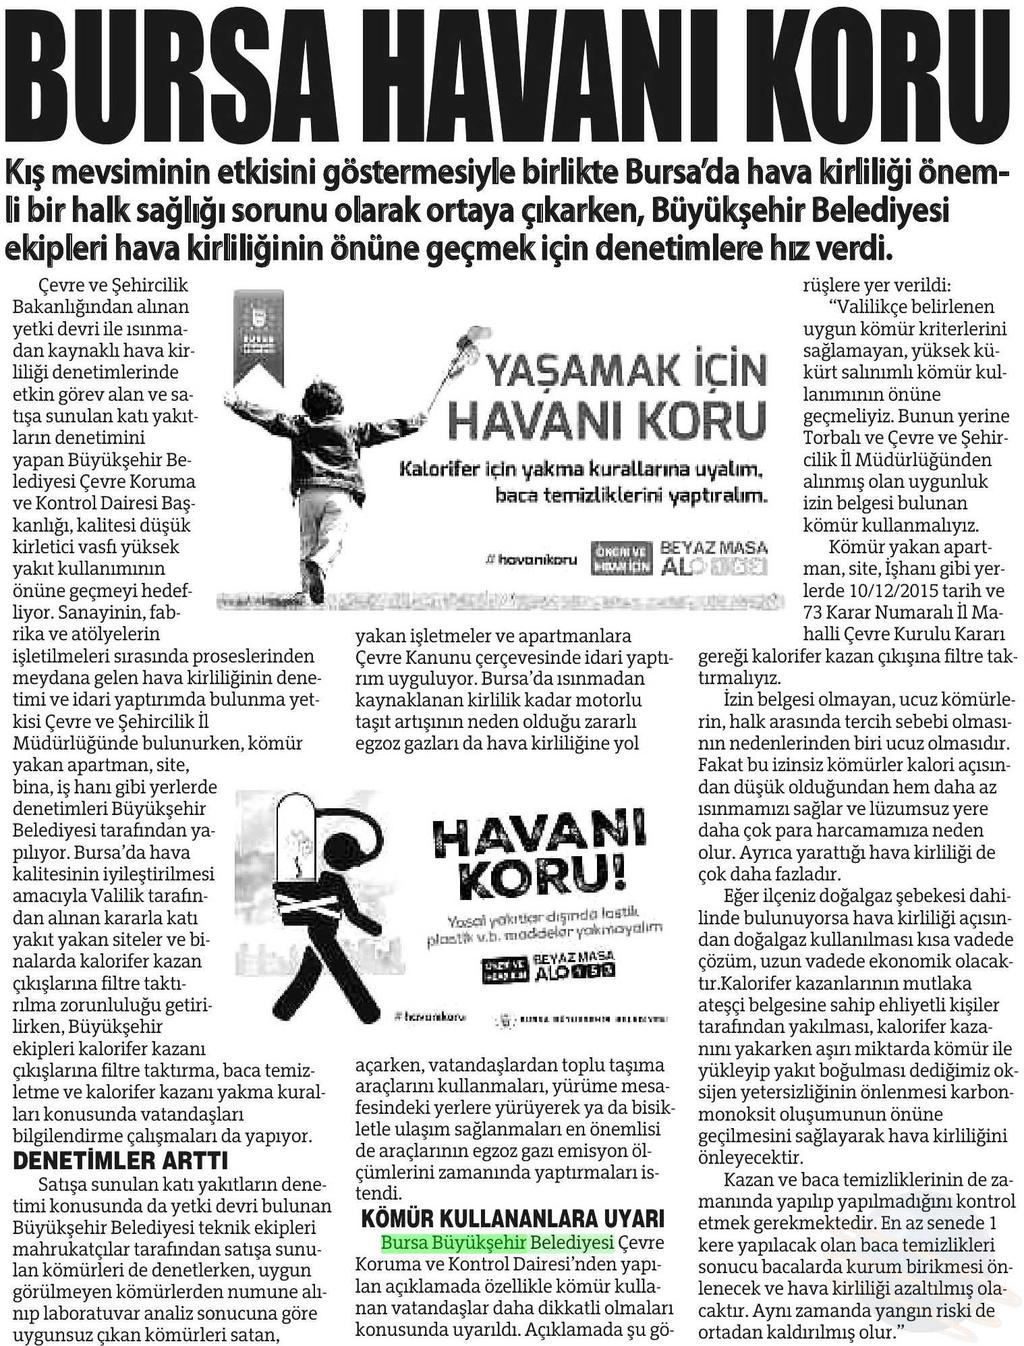 BURSA HAVANI KORU Yayın Adı : Bursa'da Meydan